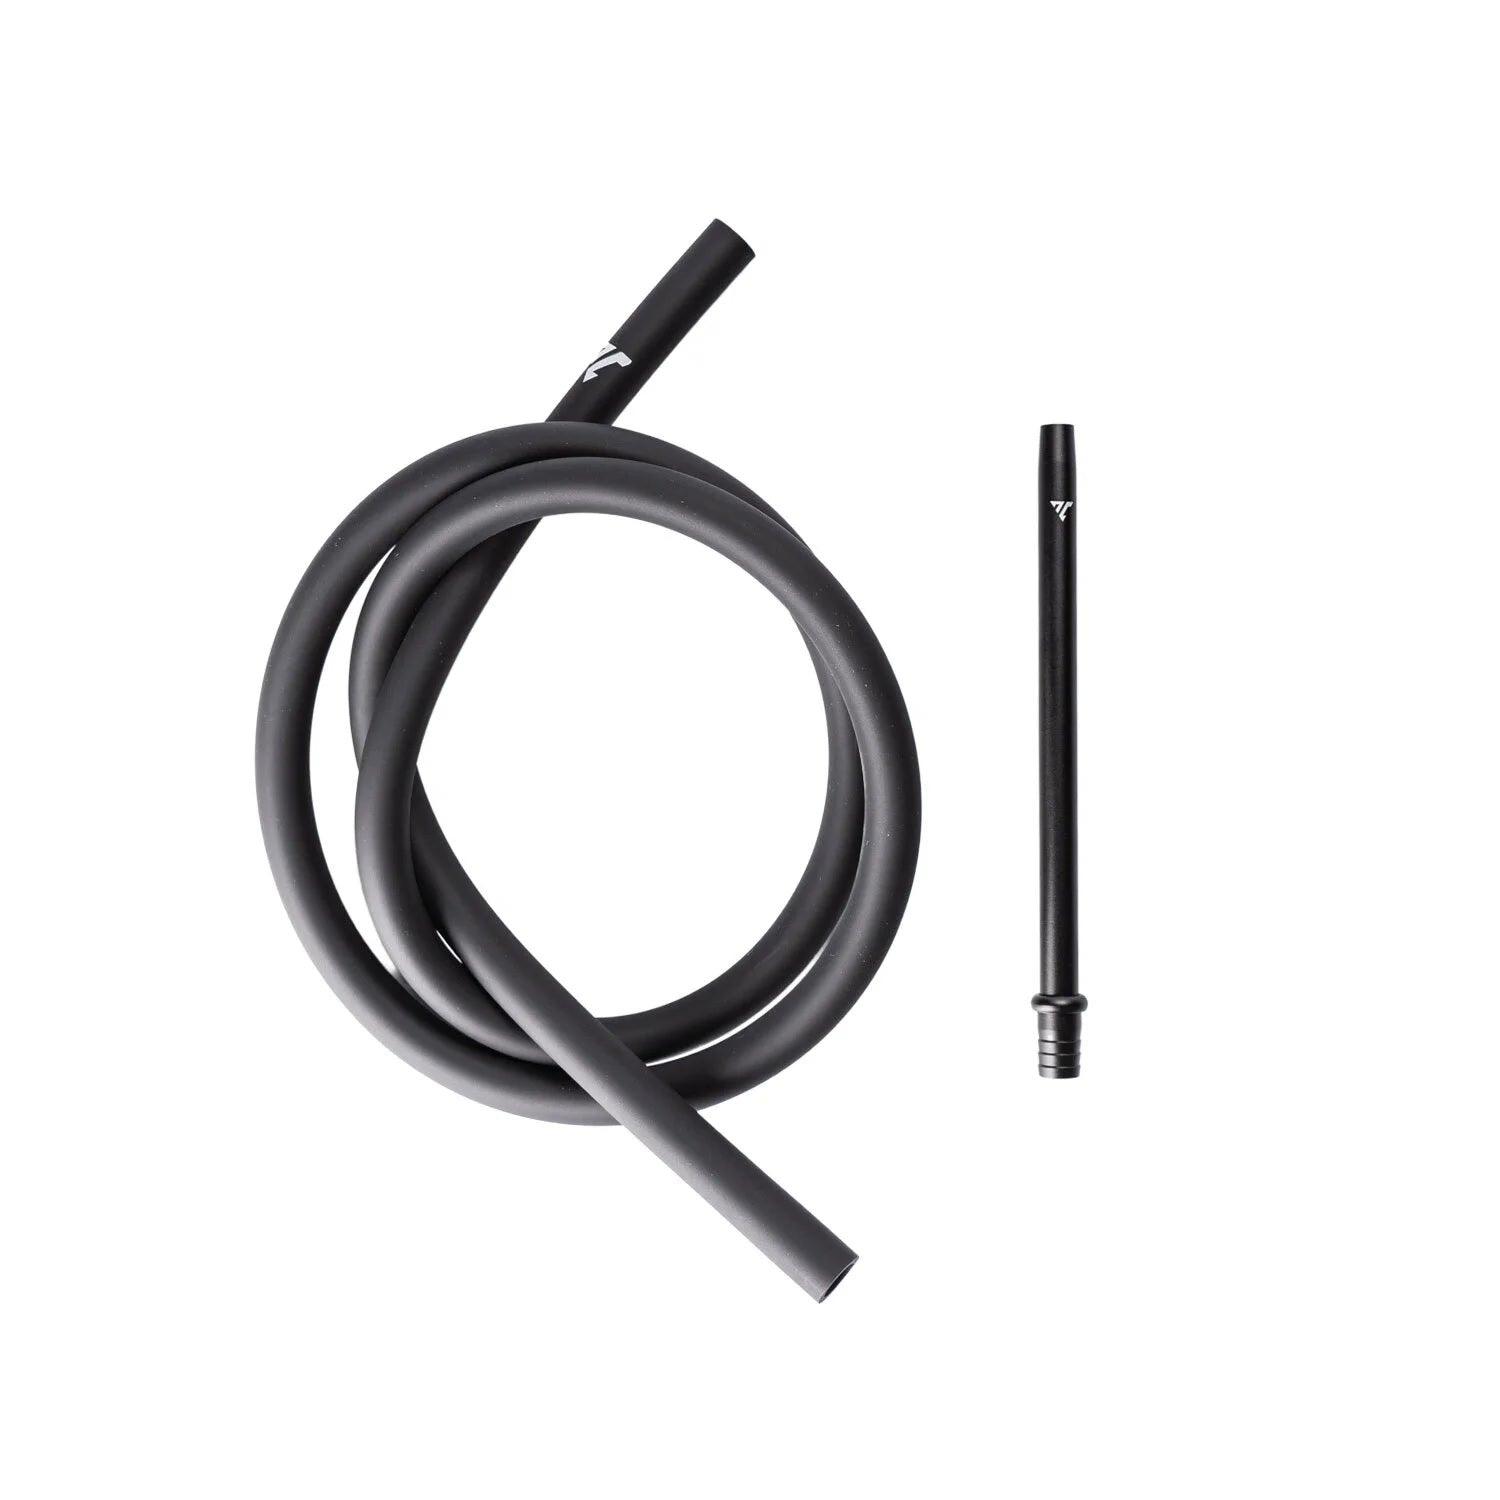 Aeon Vyro Mouthpiece black 20cm + Silicone hose black - Starter Set - shishagear - UK Shisha Hookah Black Friday